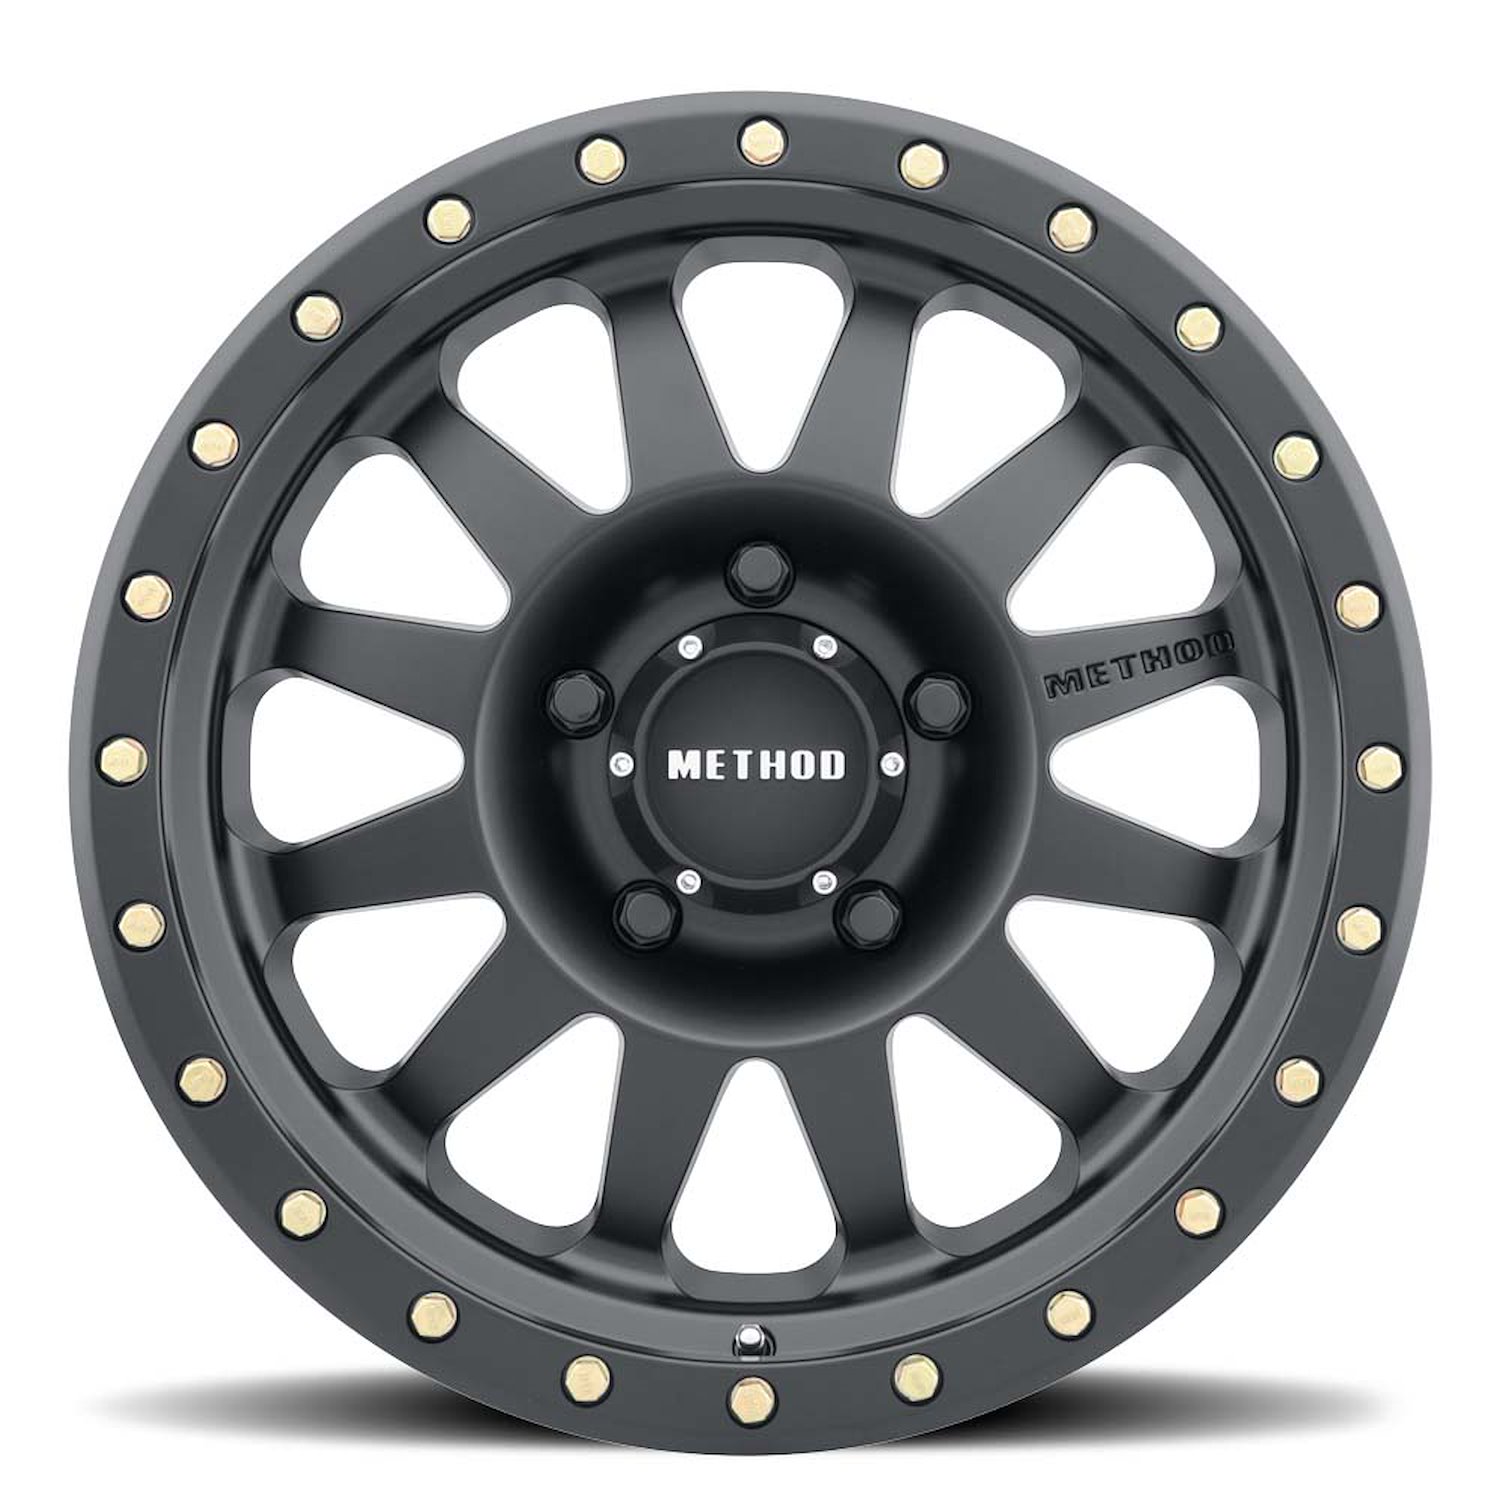 MR30478555500 STREET MR304 Double Standard Wheel [Size: 17" x 8.5"] Matte Black